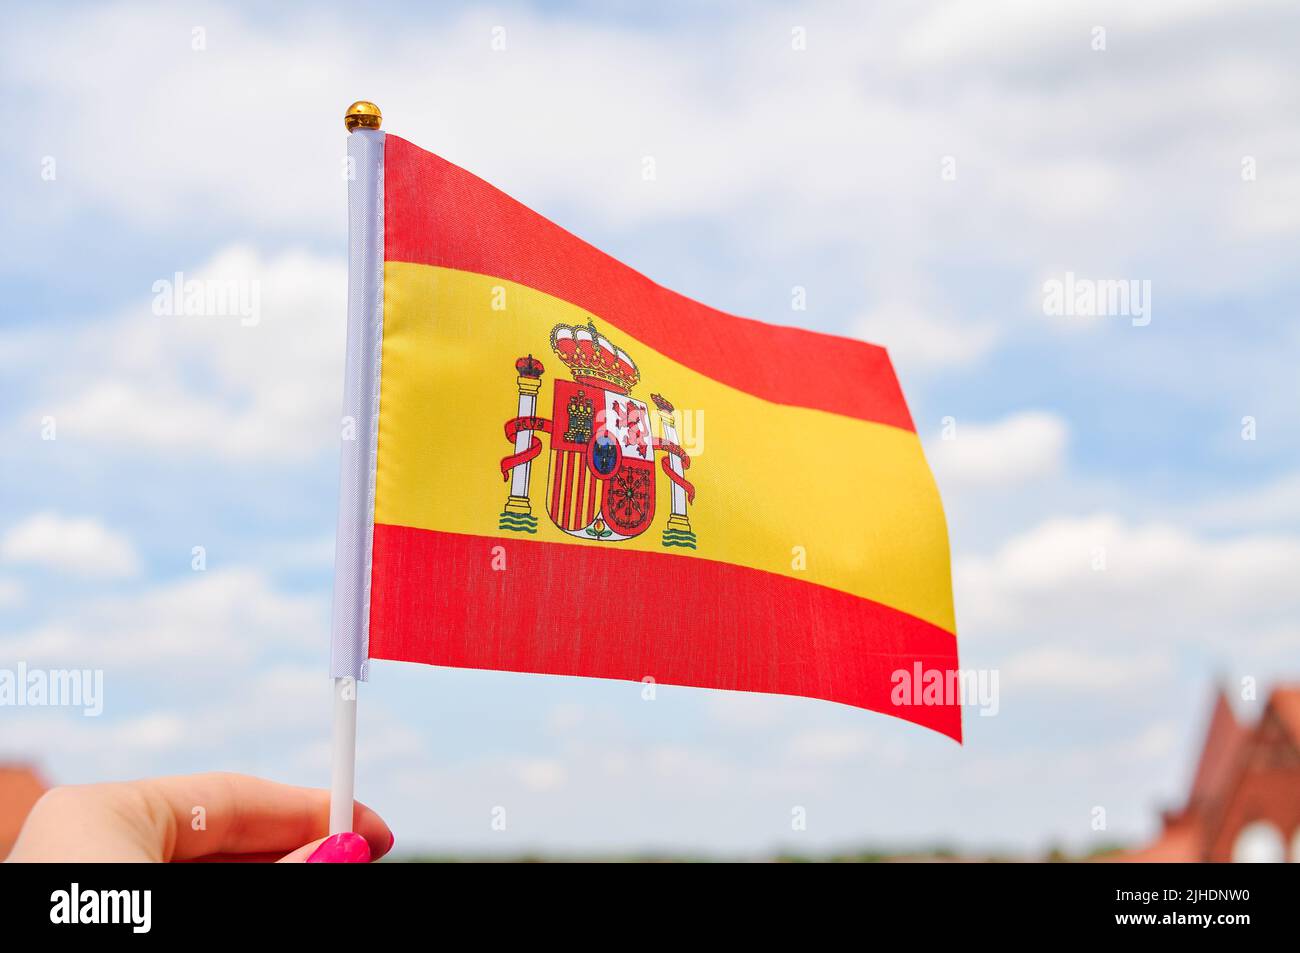 Gros plan du drapeau national espagnol jaune et rouge, drapeau de la main Banque D'Images